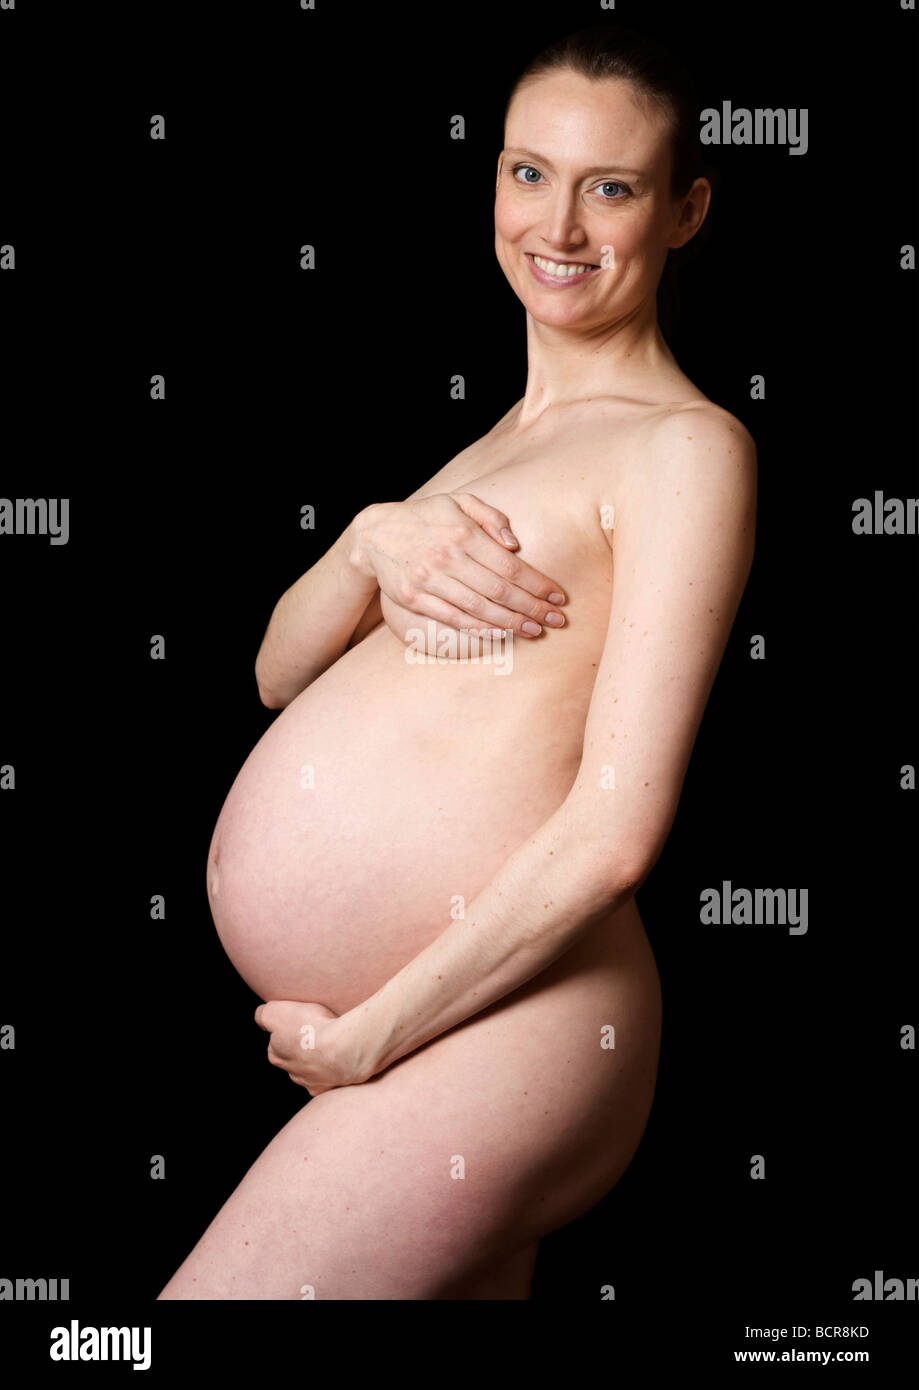 Nudo di donna incinta a 38 settimane che copre il seno Foto stock